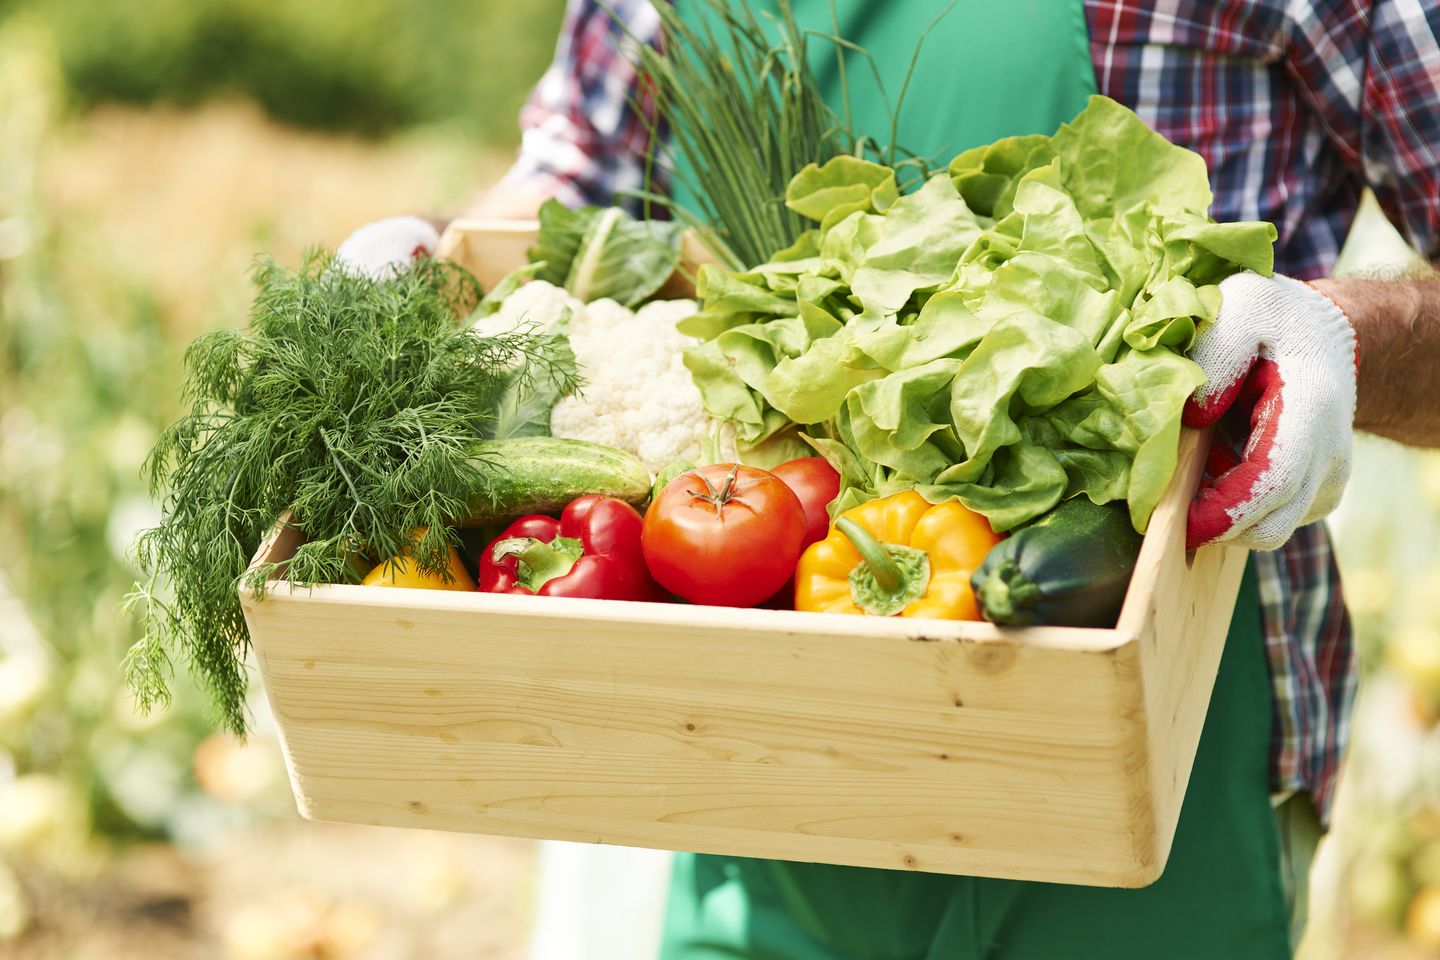 Sayur dan buah organik adalah salah satu contoh bisnis ramah lingkungan.